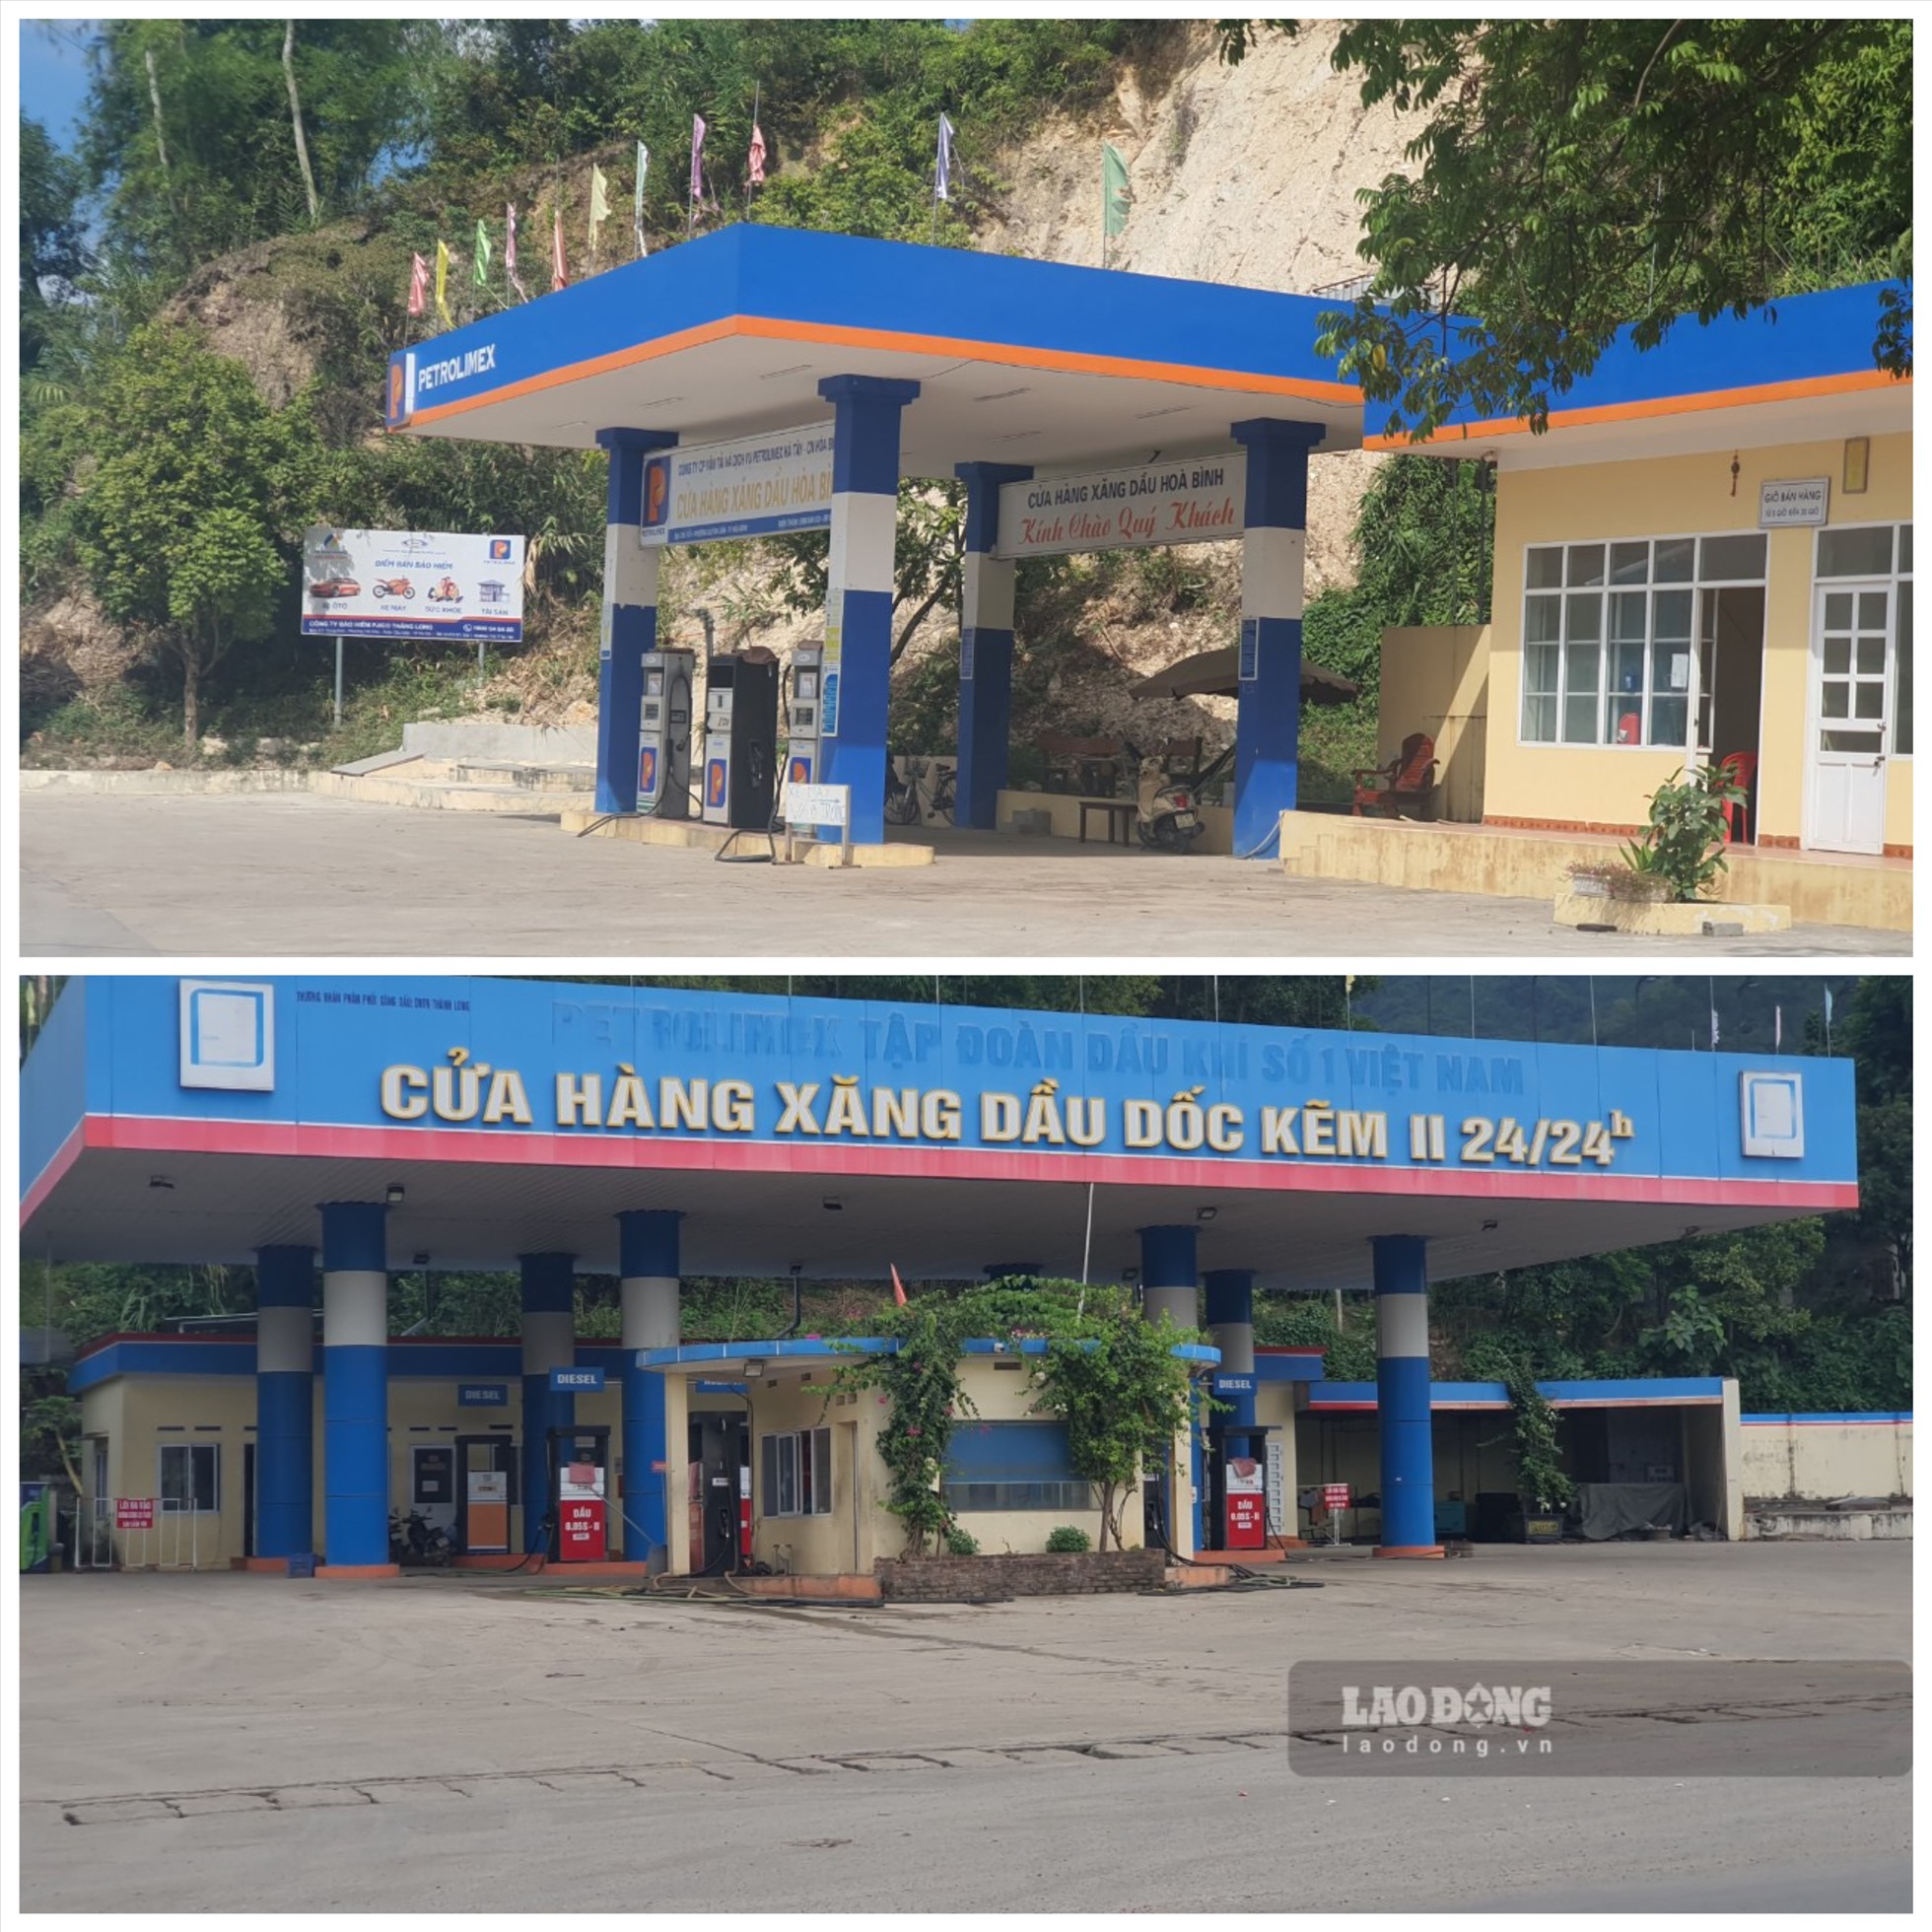 Cửa hàng xăng dầu Dốc Kẽm II (phường Dân Chủ, TP Hoà Bình) đã ngừng bán xăng từ ngày 12.11, còn